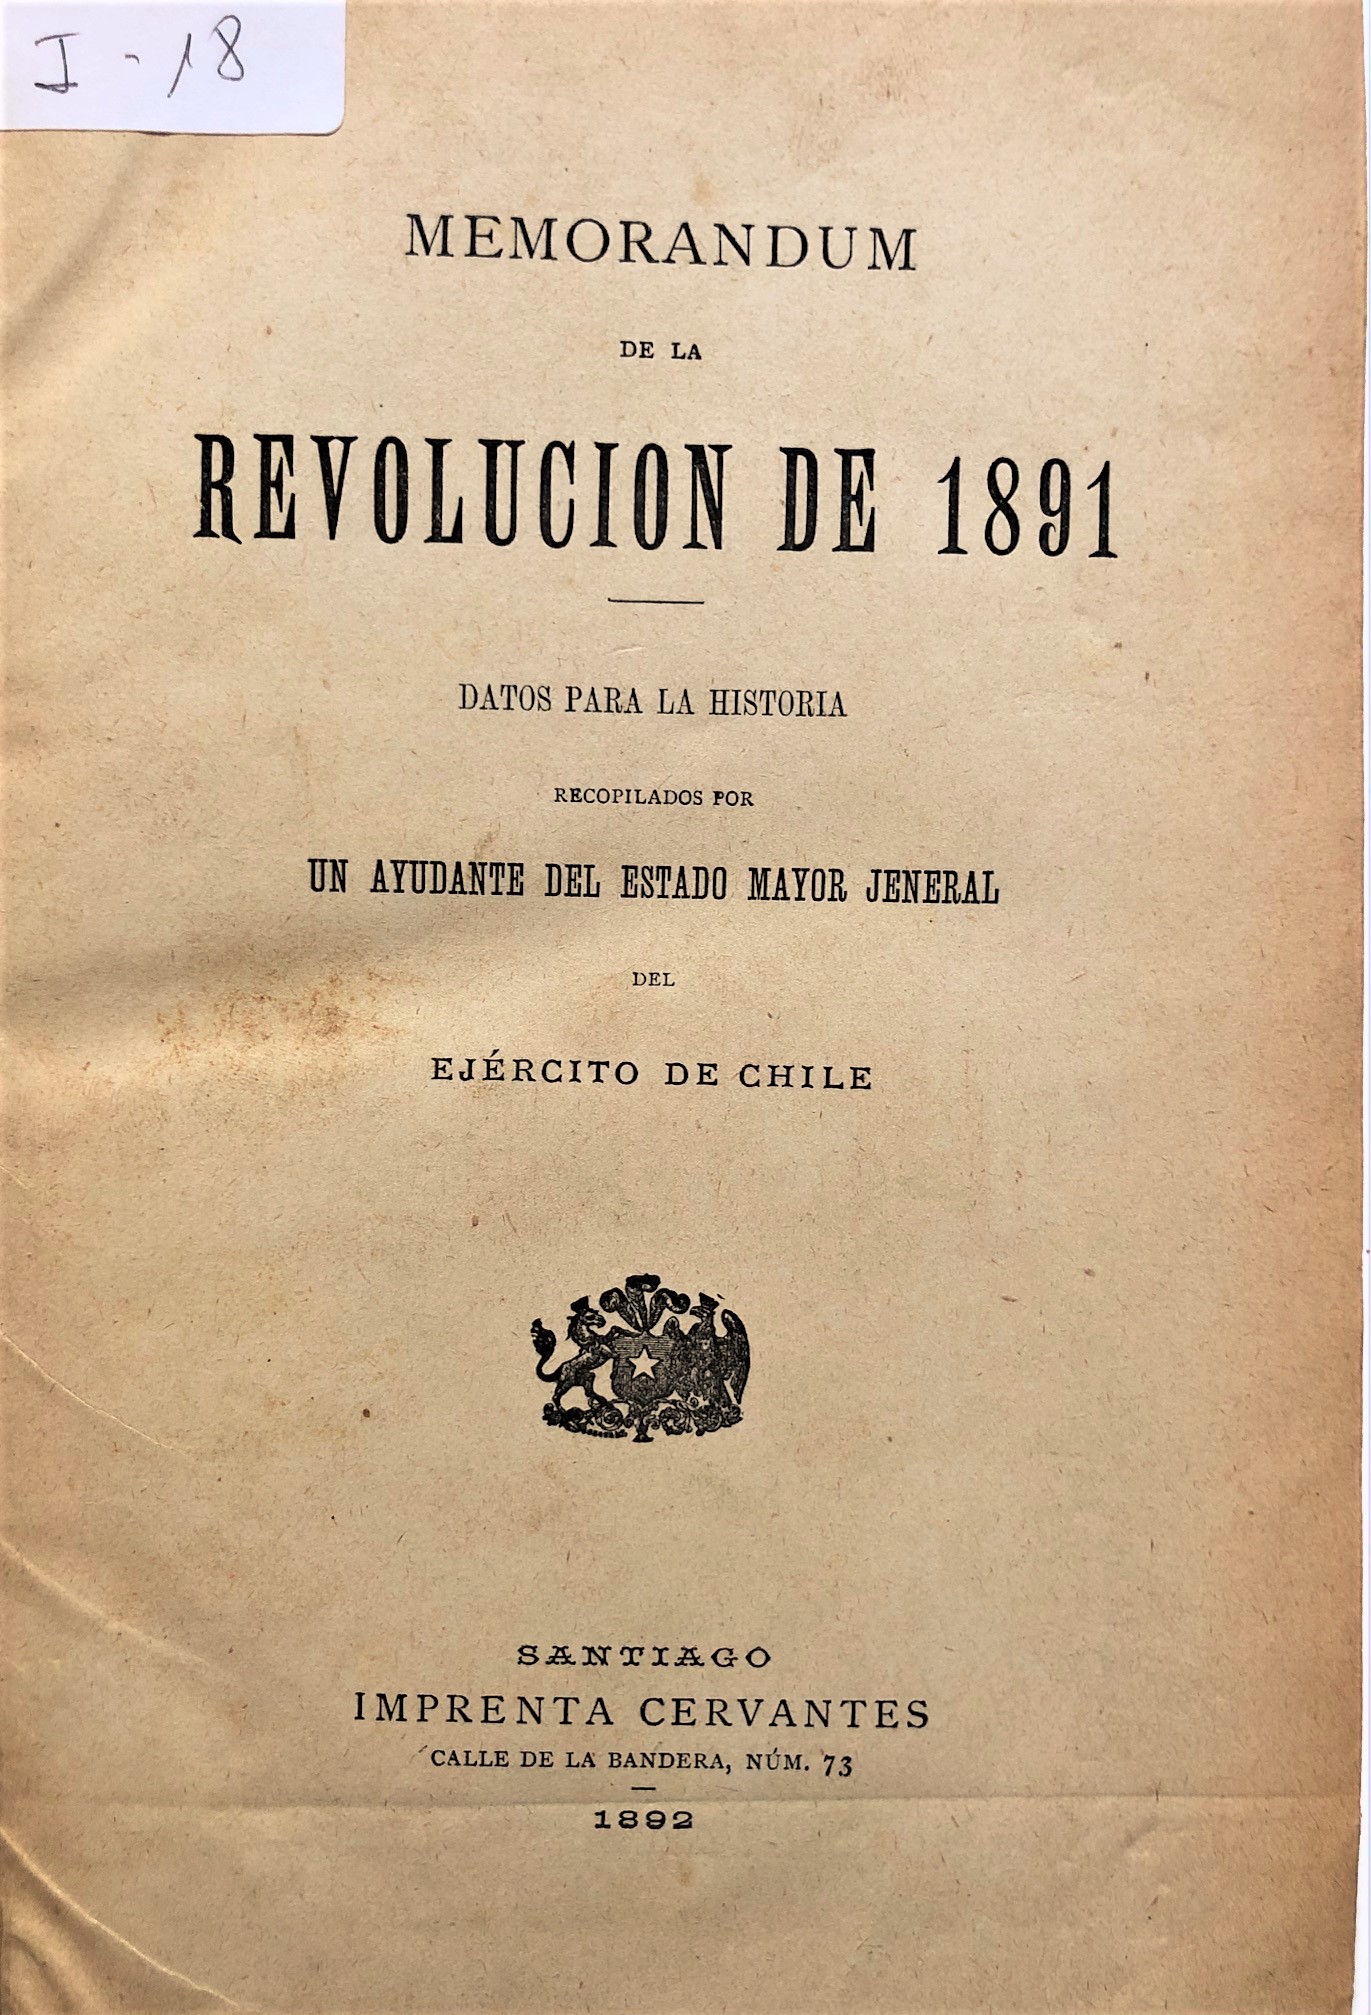 Memorandum de la revolución de 1891